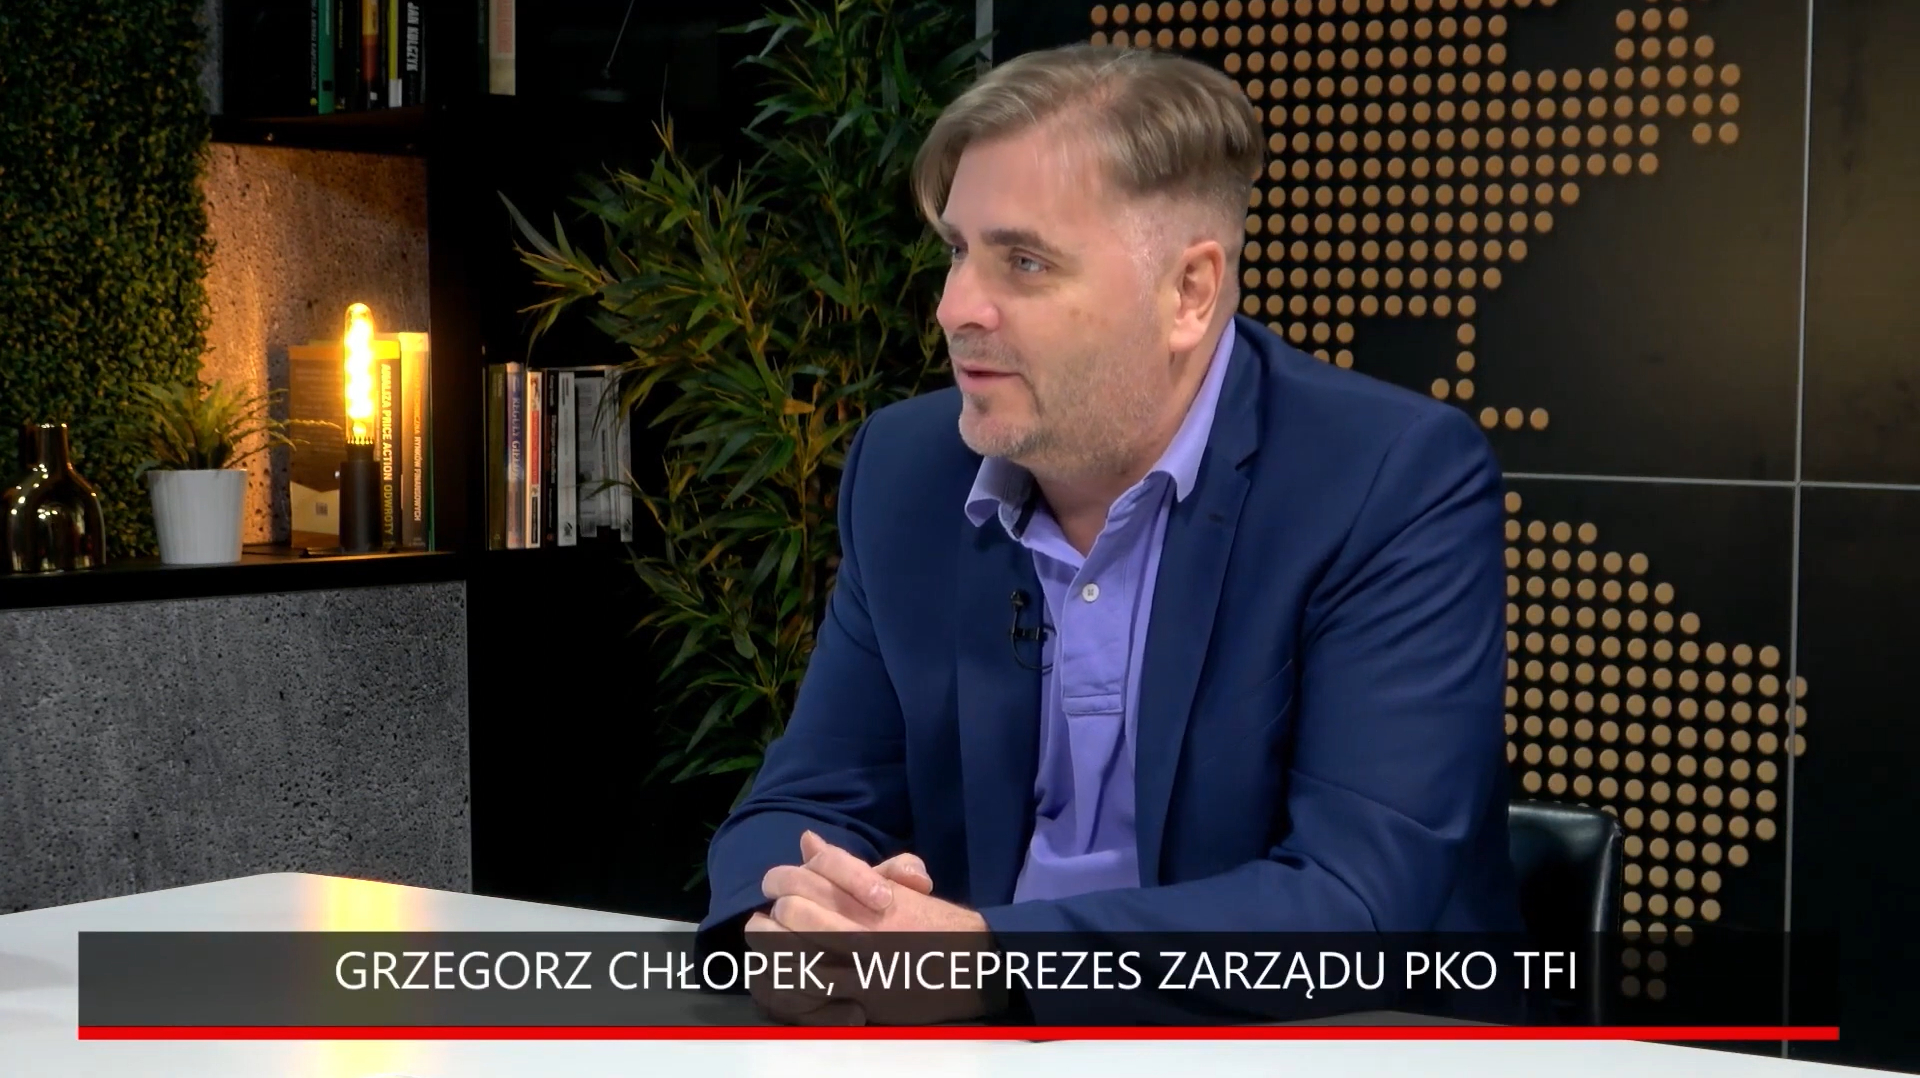 #PrezesTeżCzłowiek - Grzegorz Chłopek